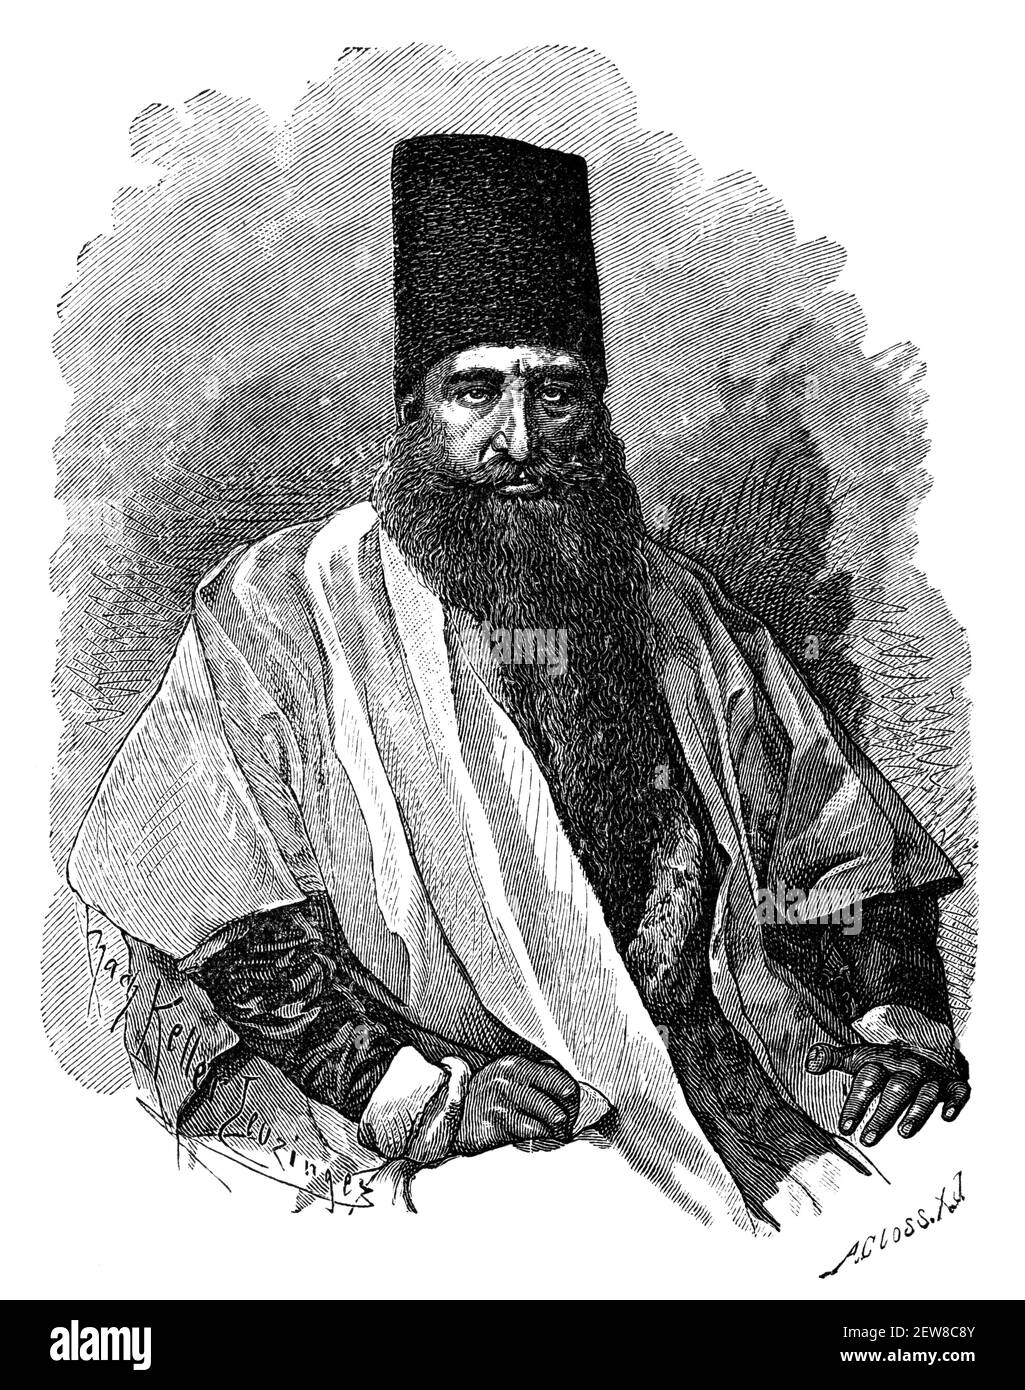 Nobile uomo persiano, Iran. Cultura e storia dell'Asia. Immagine in bianco e nero d'epoca. 19 ° secolo. Foto Stock